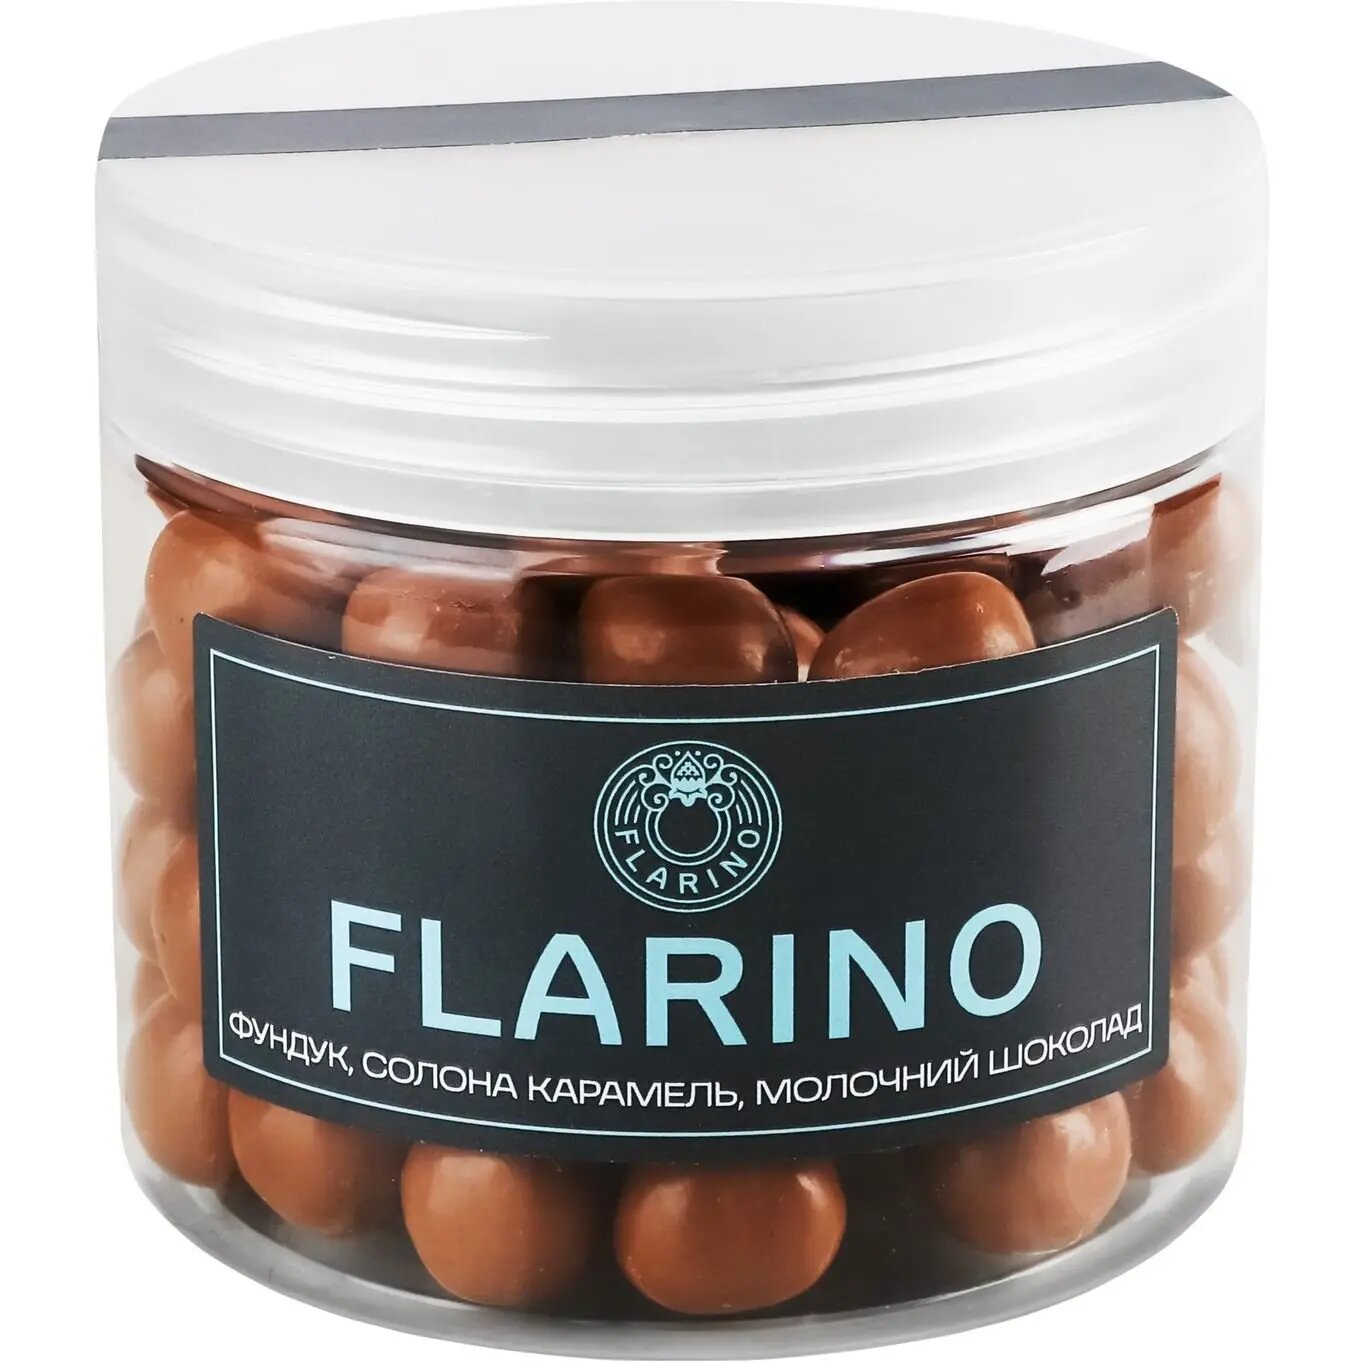 Фундук Flarino в соленой карамели покрытый молочным шоколадом 180 г (924017) - фото 2